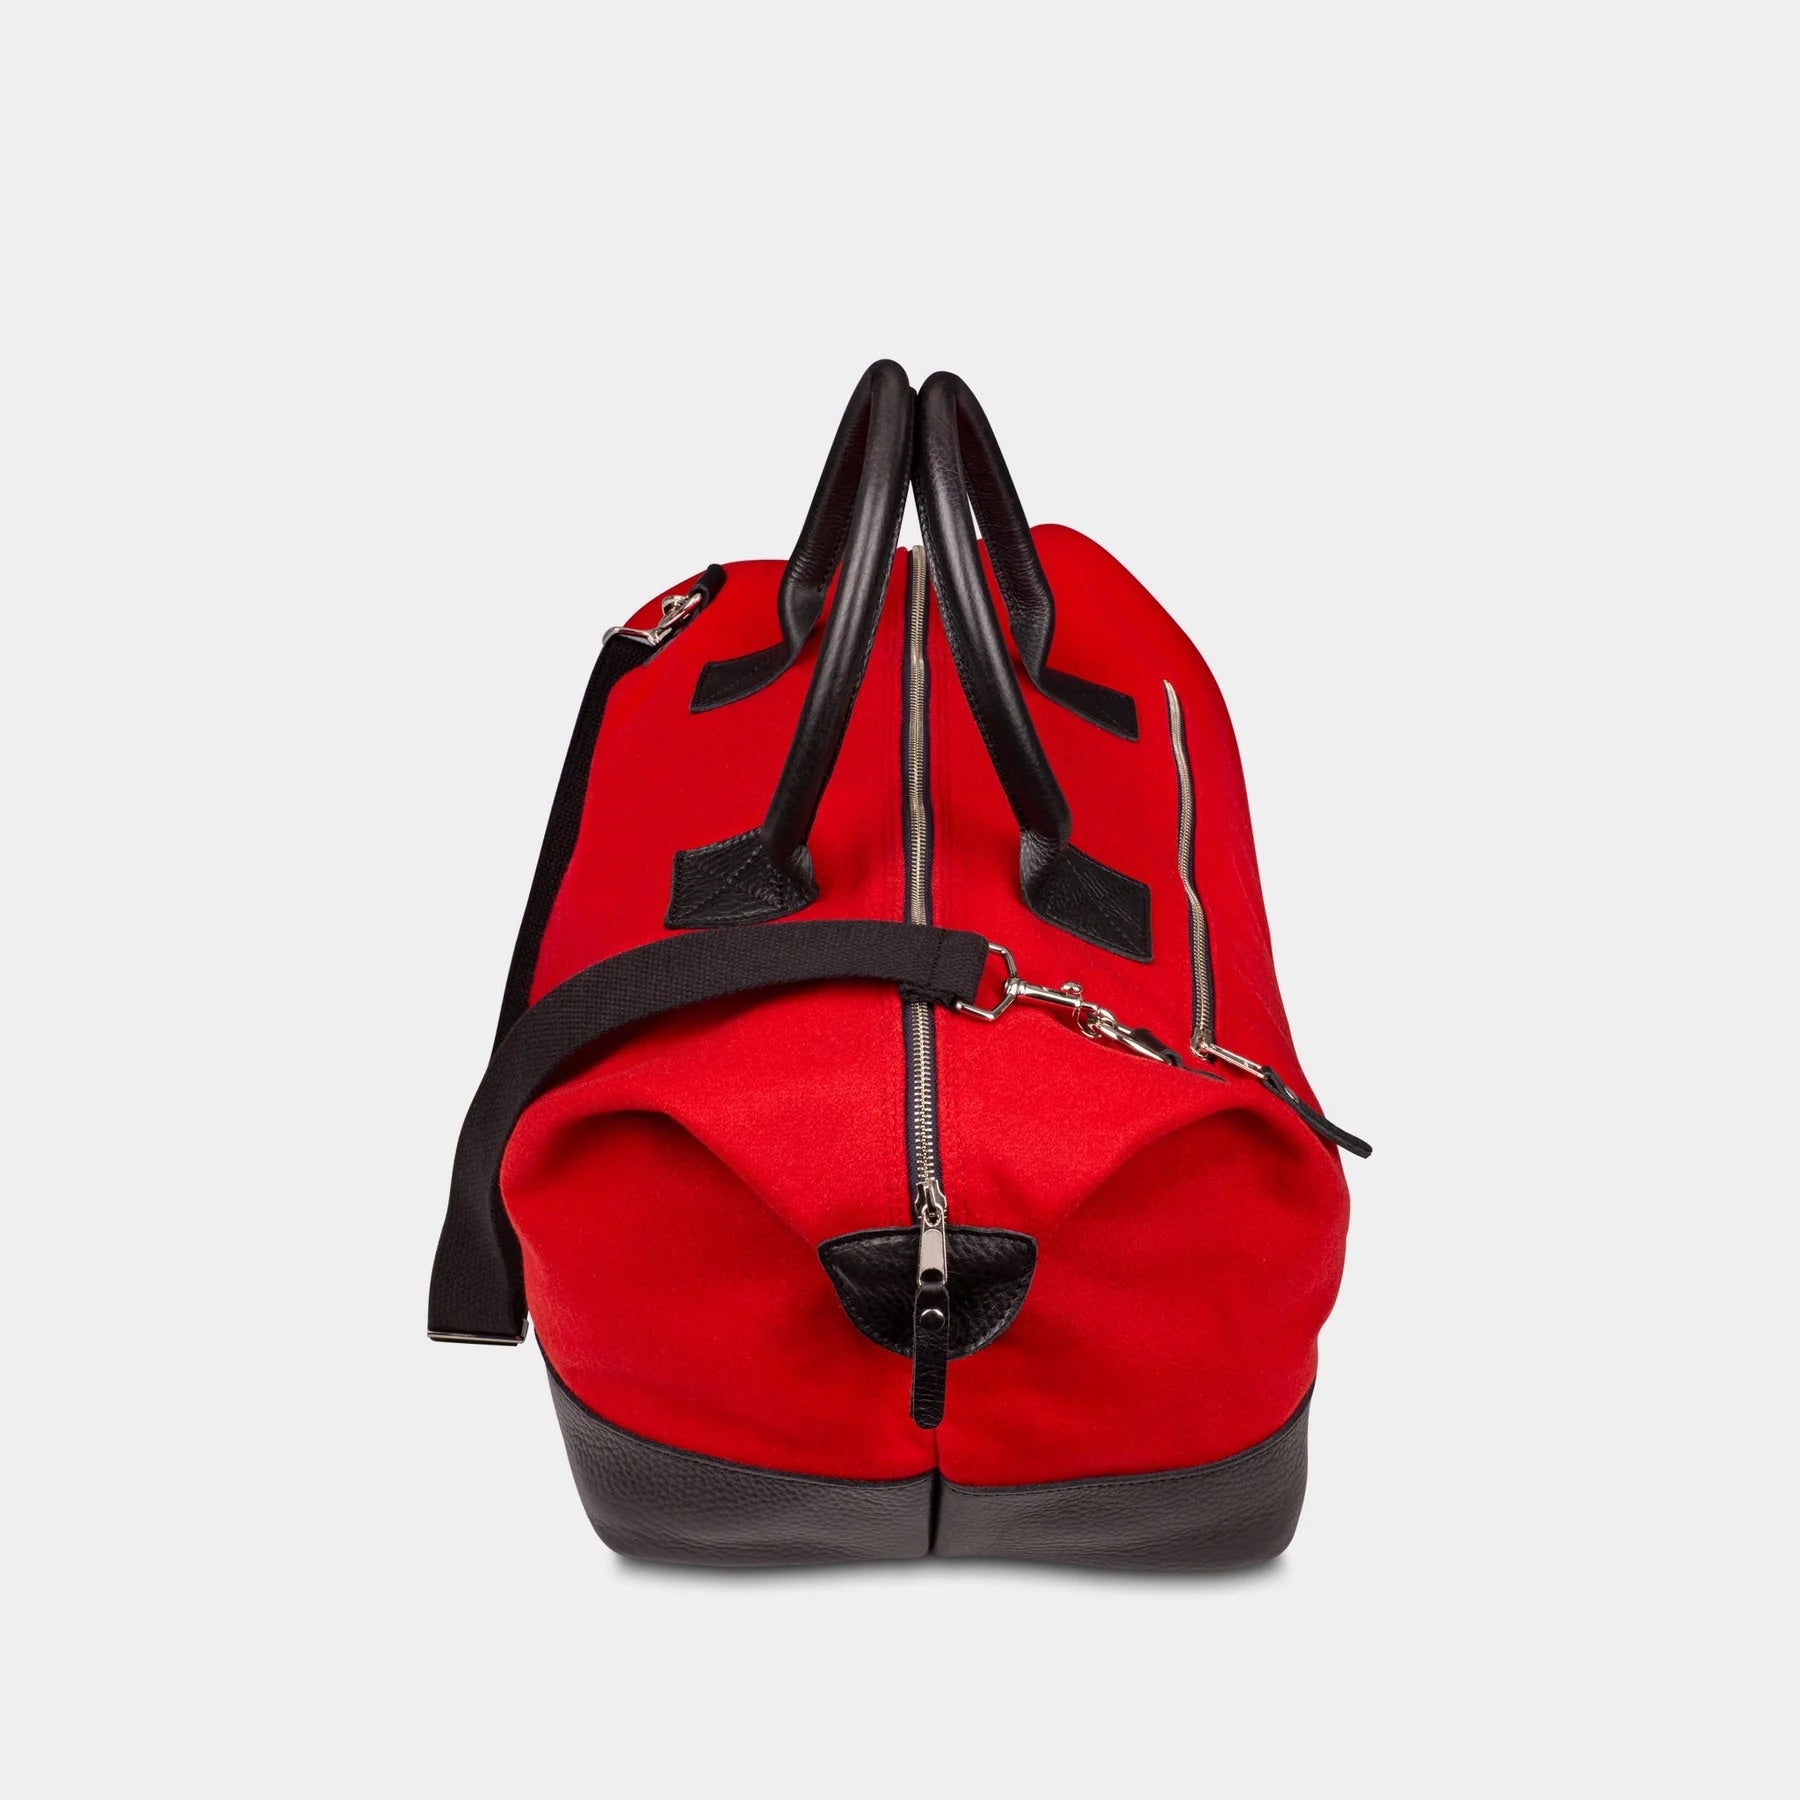 UGA "G" Weekender Duffle Bag in Red